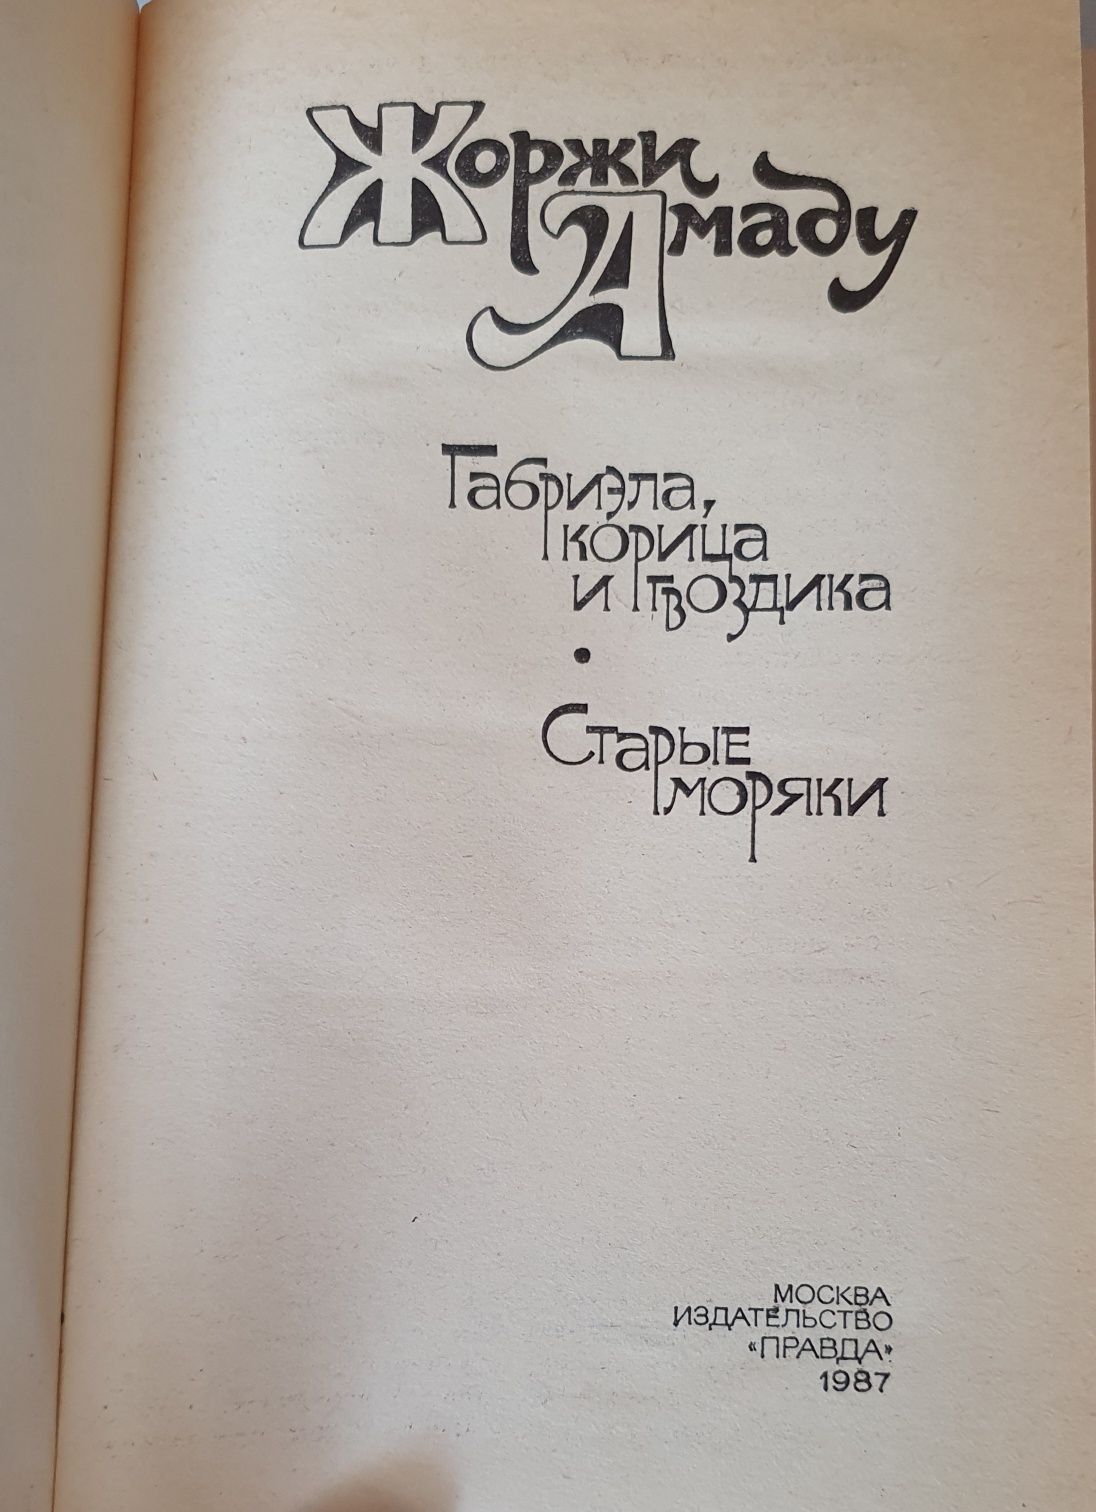 Книга Жоржи Амаду